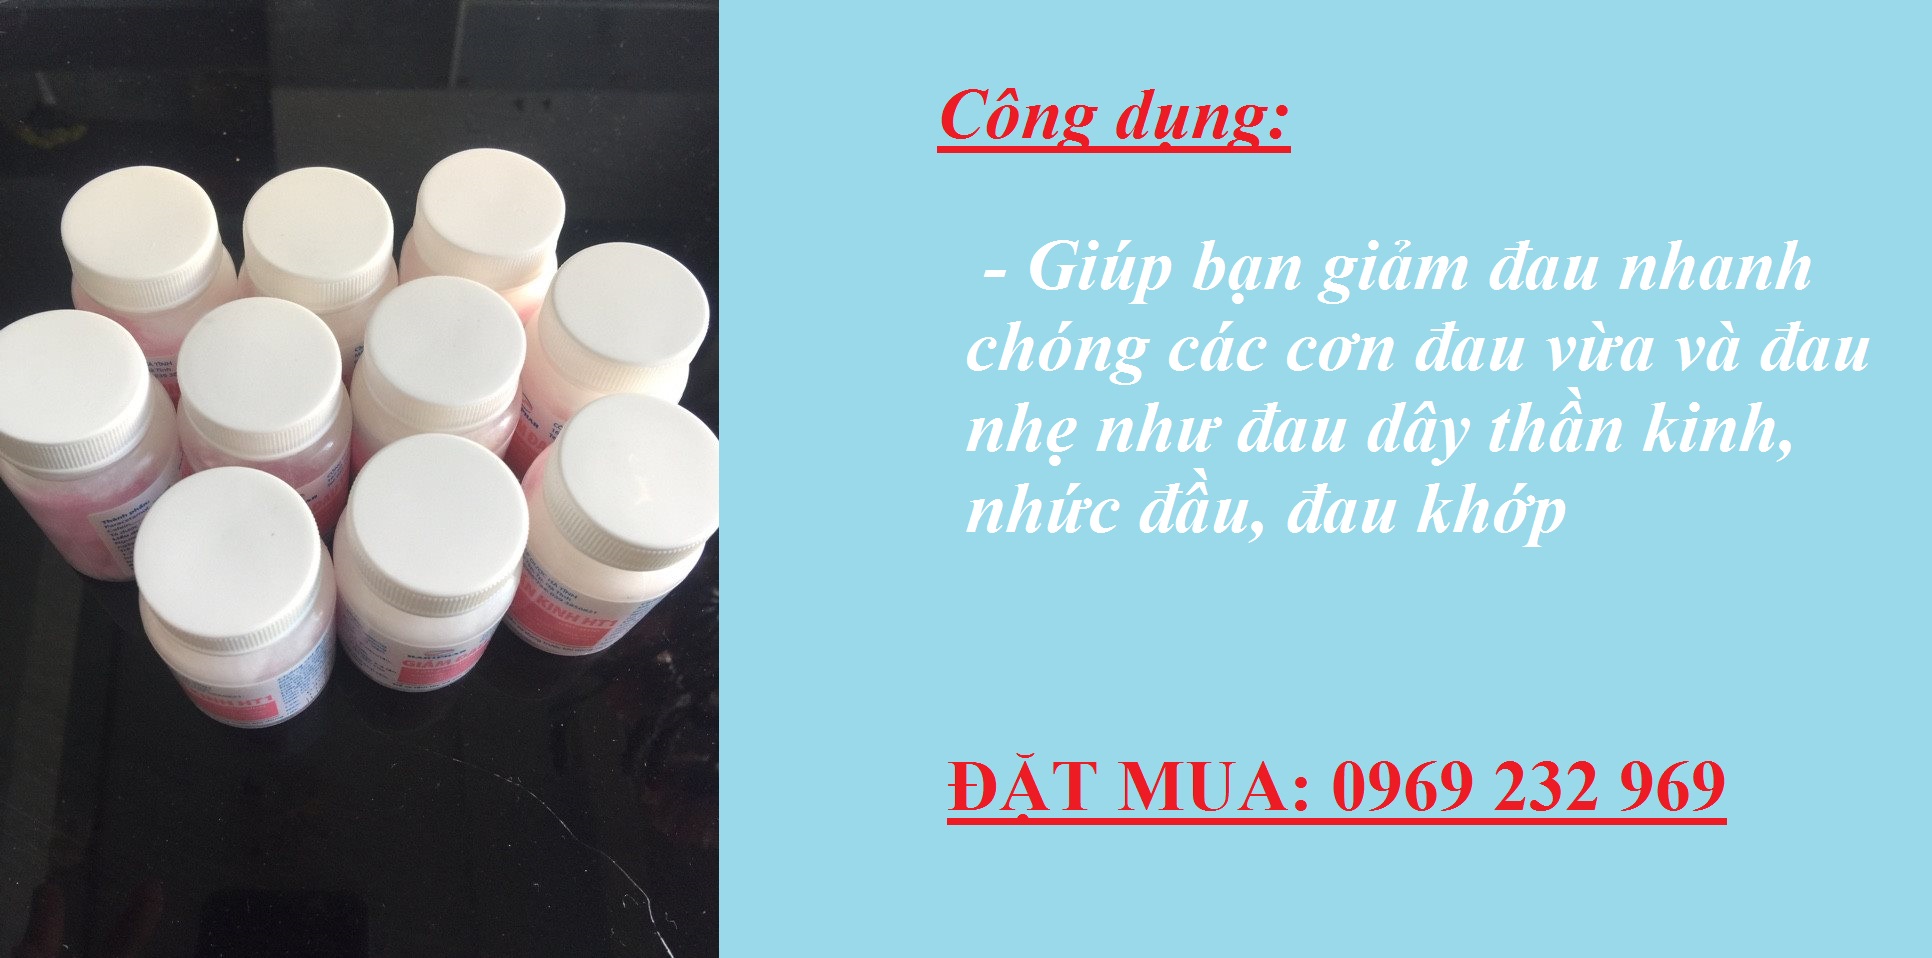 Mua thuốc giảm đau thần kinh HT1 ở Hồ Chí Minh